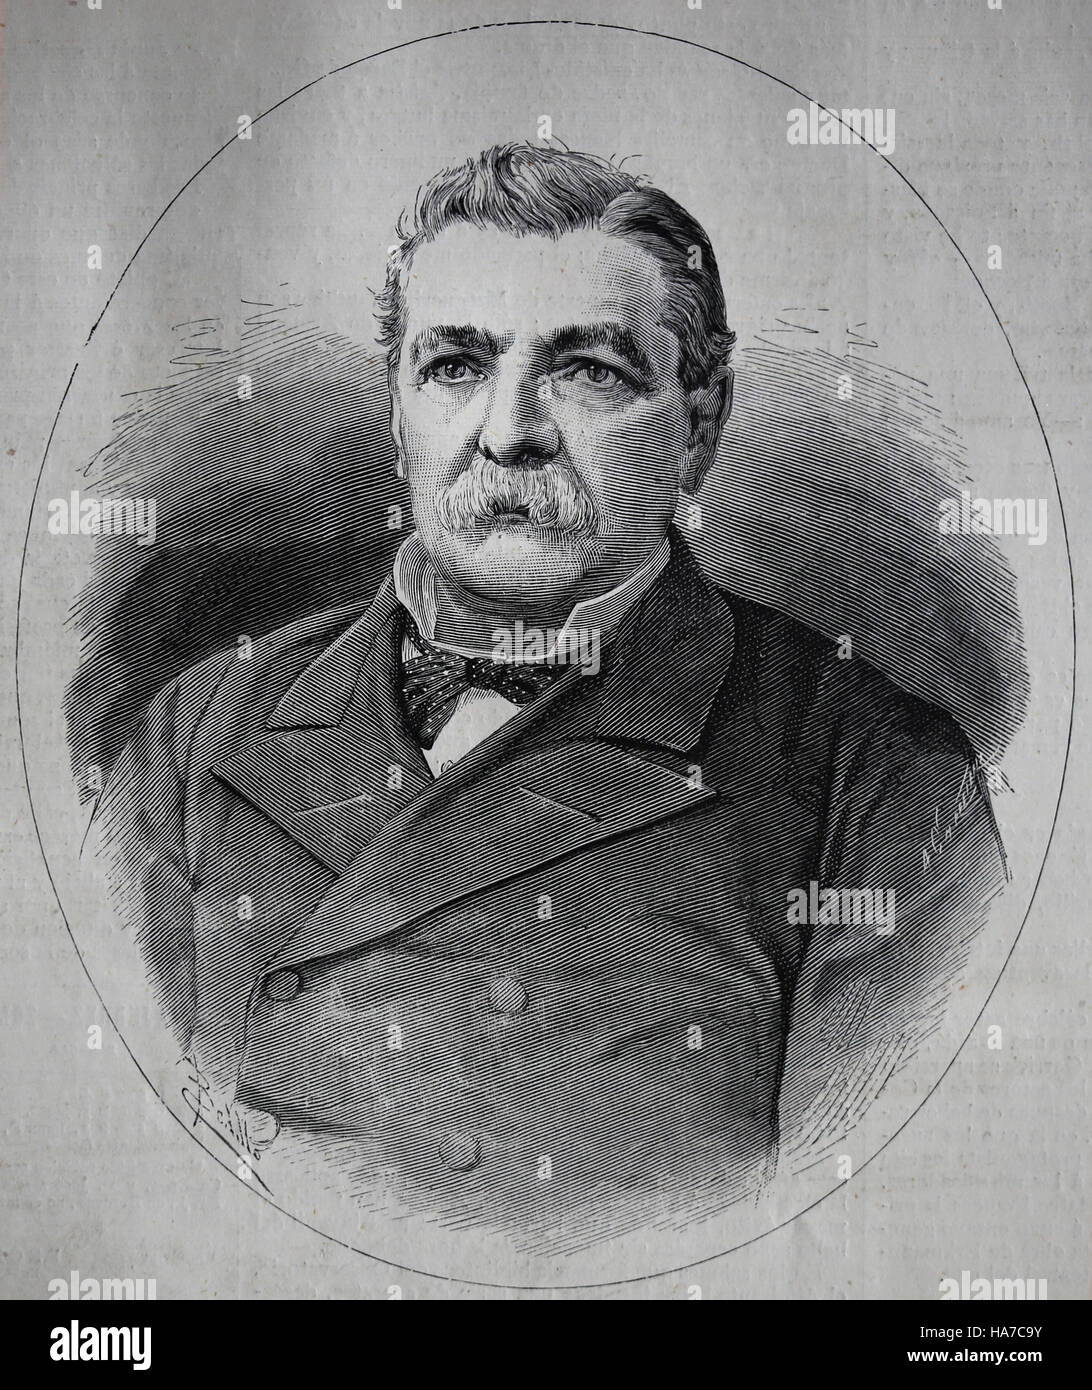 Domingo de Santa Maria (1825-1889). Chilean politician. President of Chile 1881-1886. Portrait. Engraving, 1882. Stock Photo